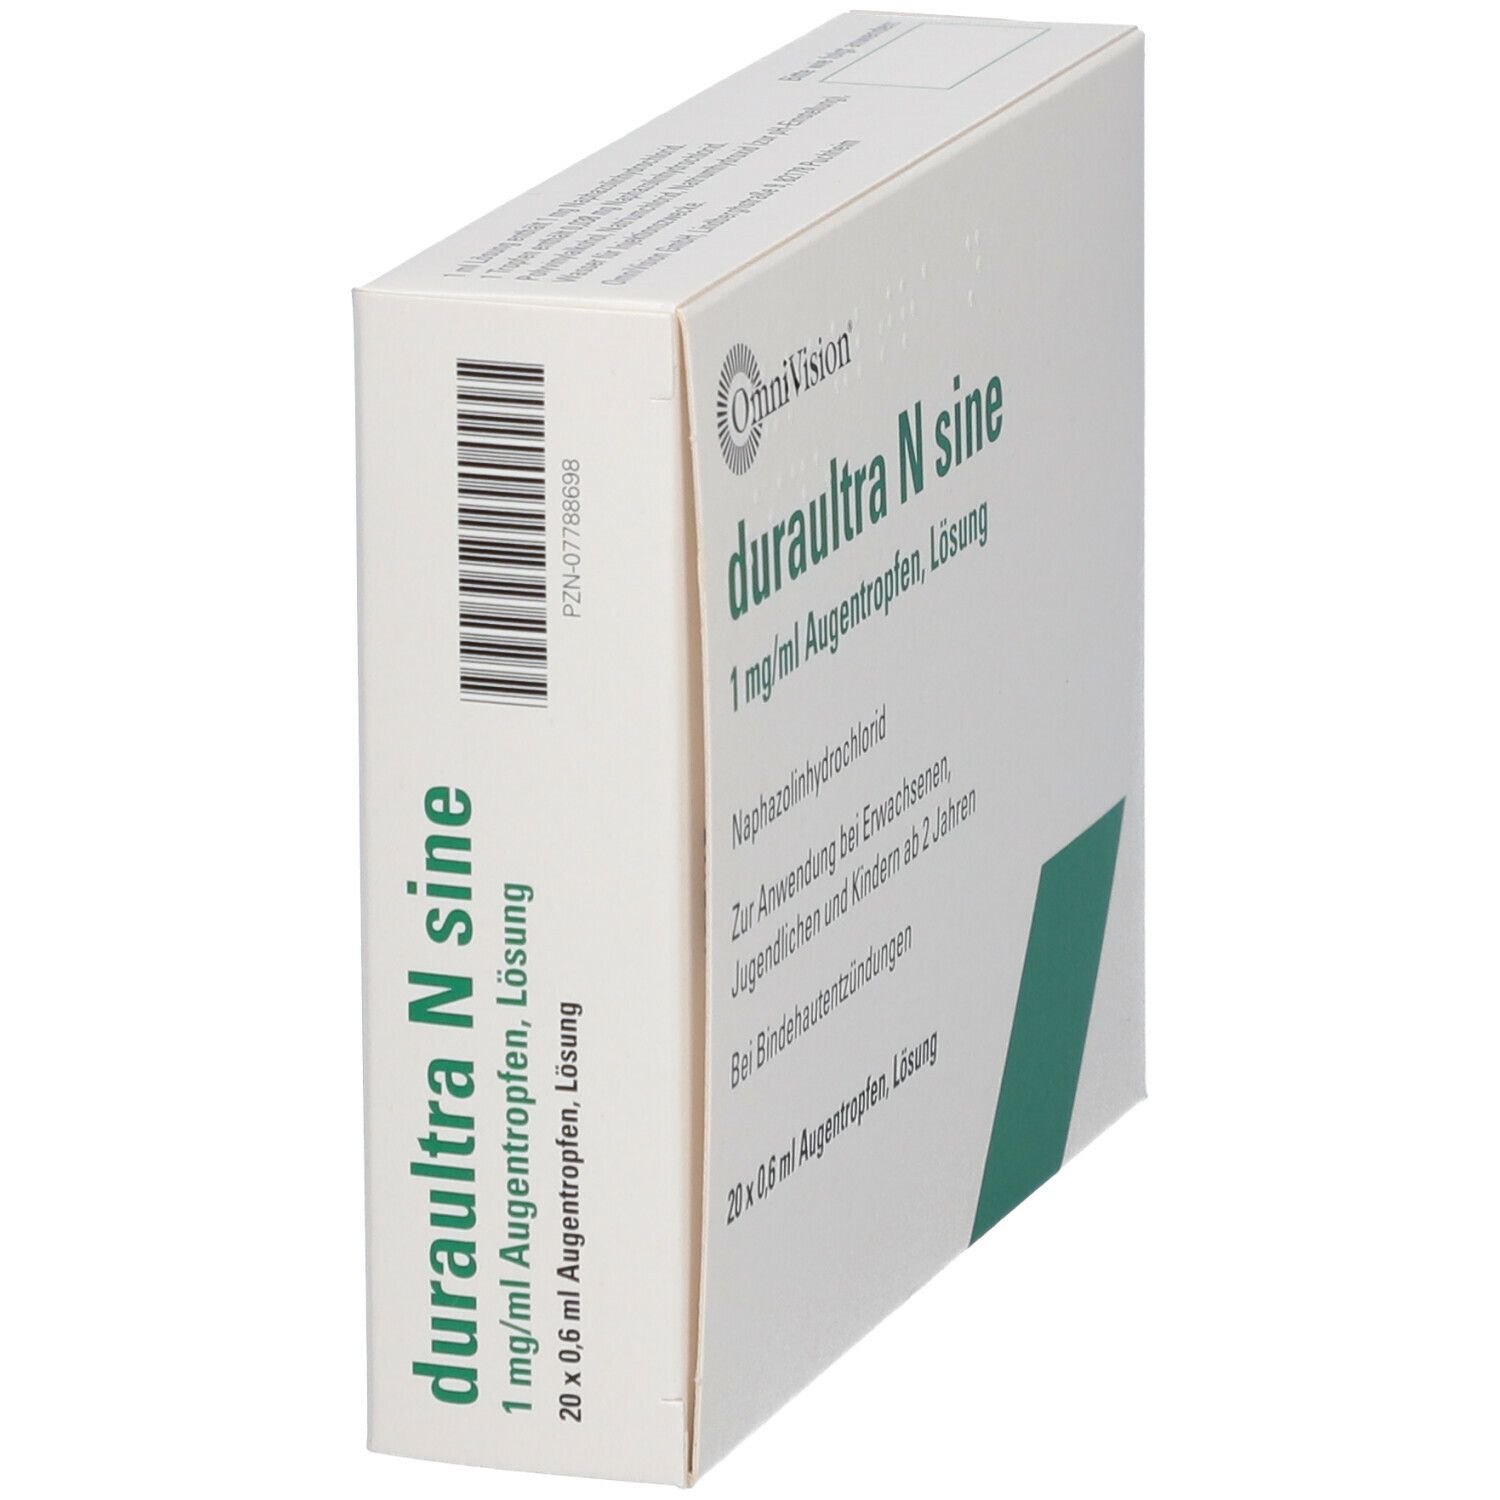 duraultra N sine 1 mg/ml Augentropfen